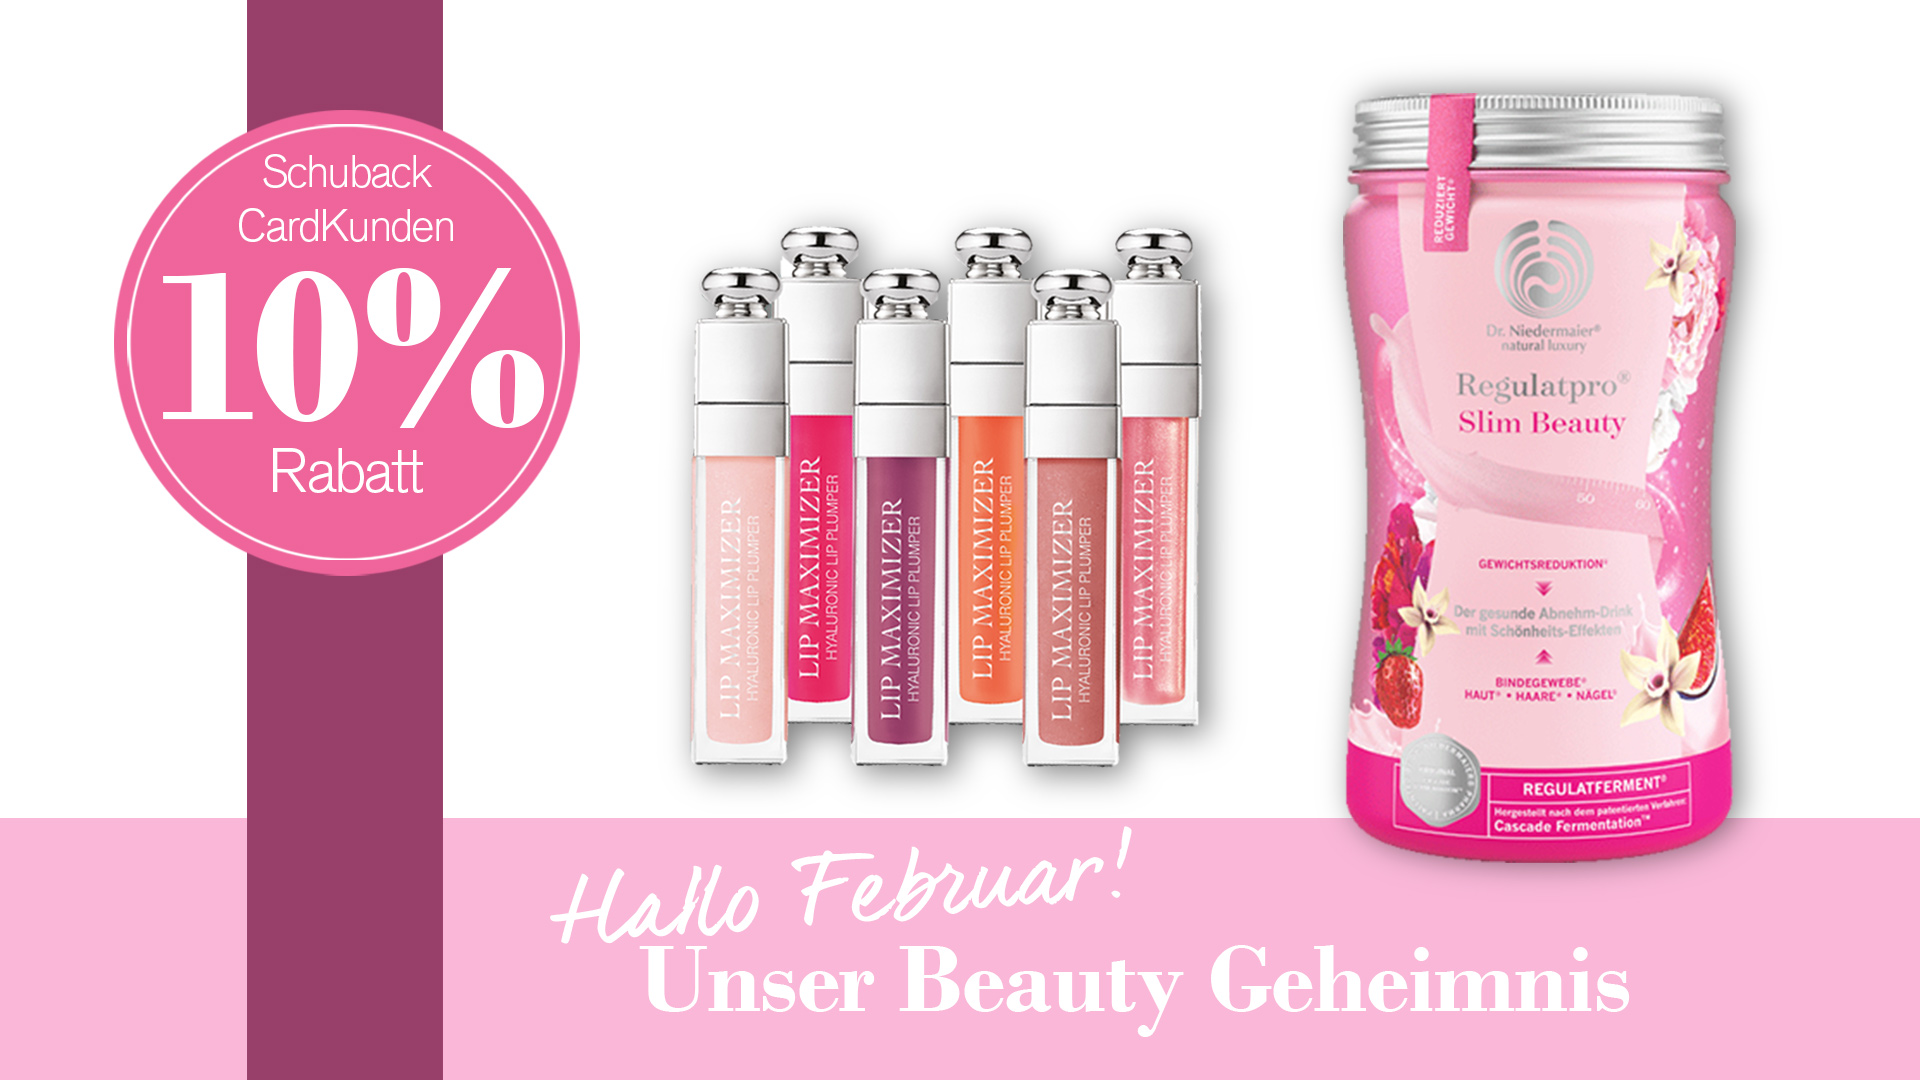 beautygeheimnis-februar-2019-drniedermaier-regulatproslimbeauty-dior-lipmaximizer